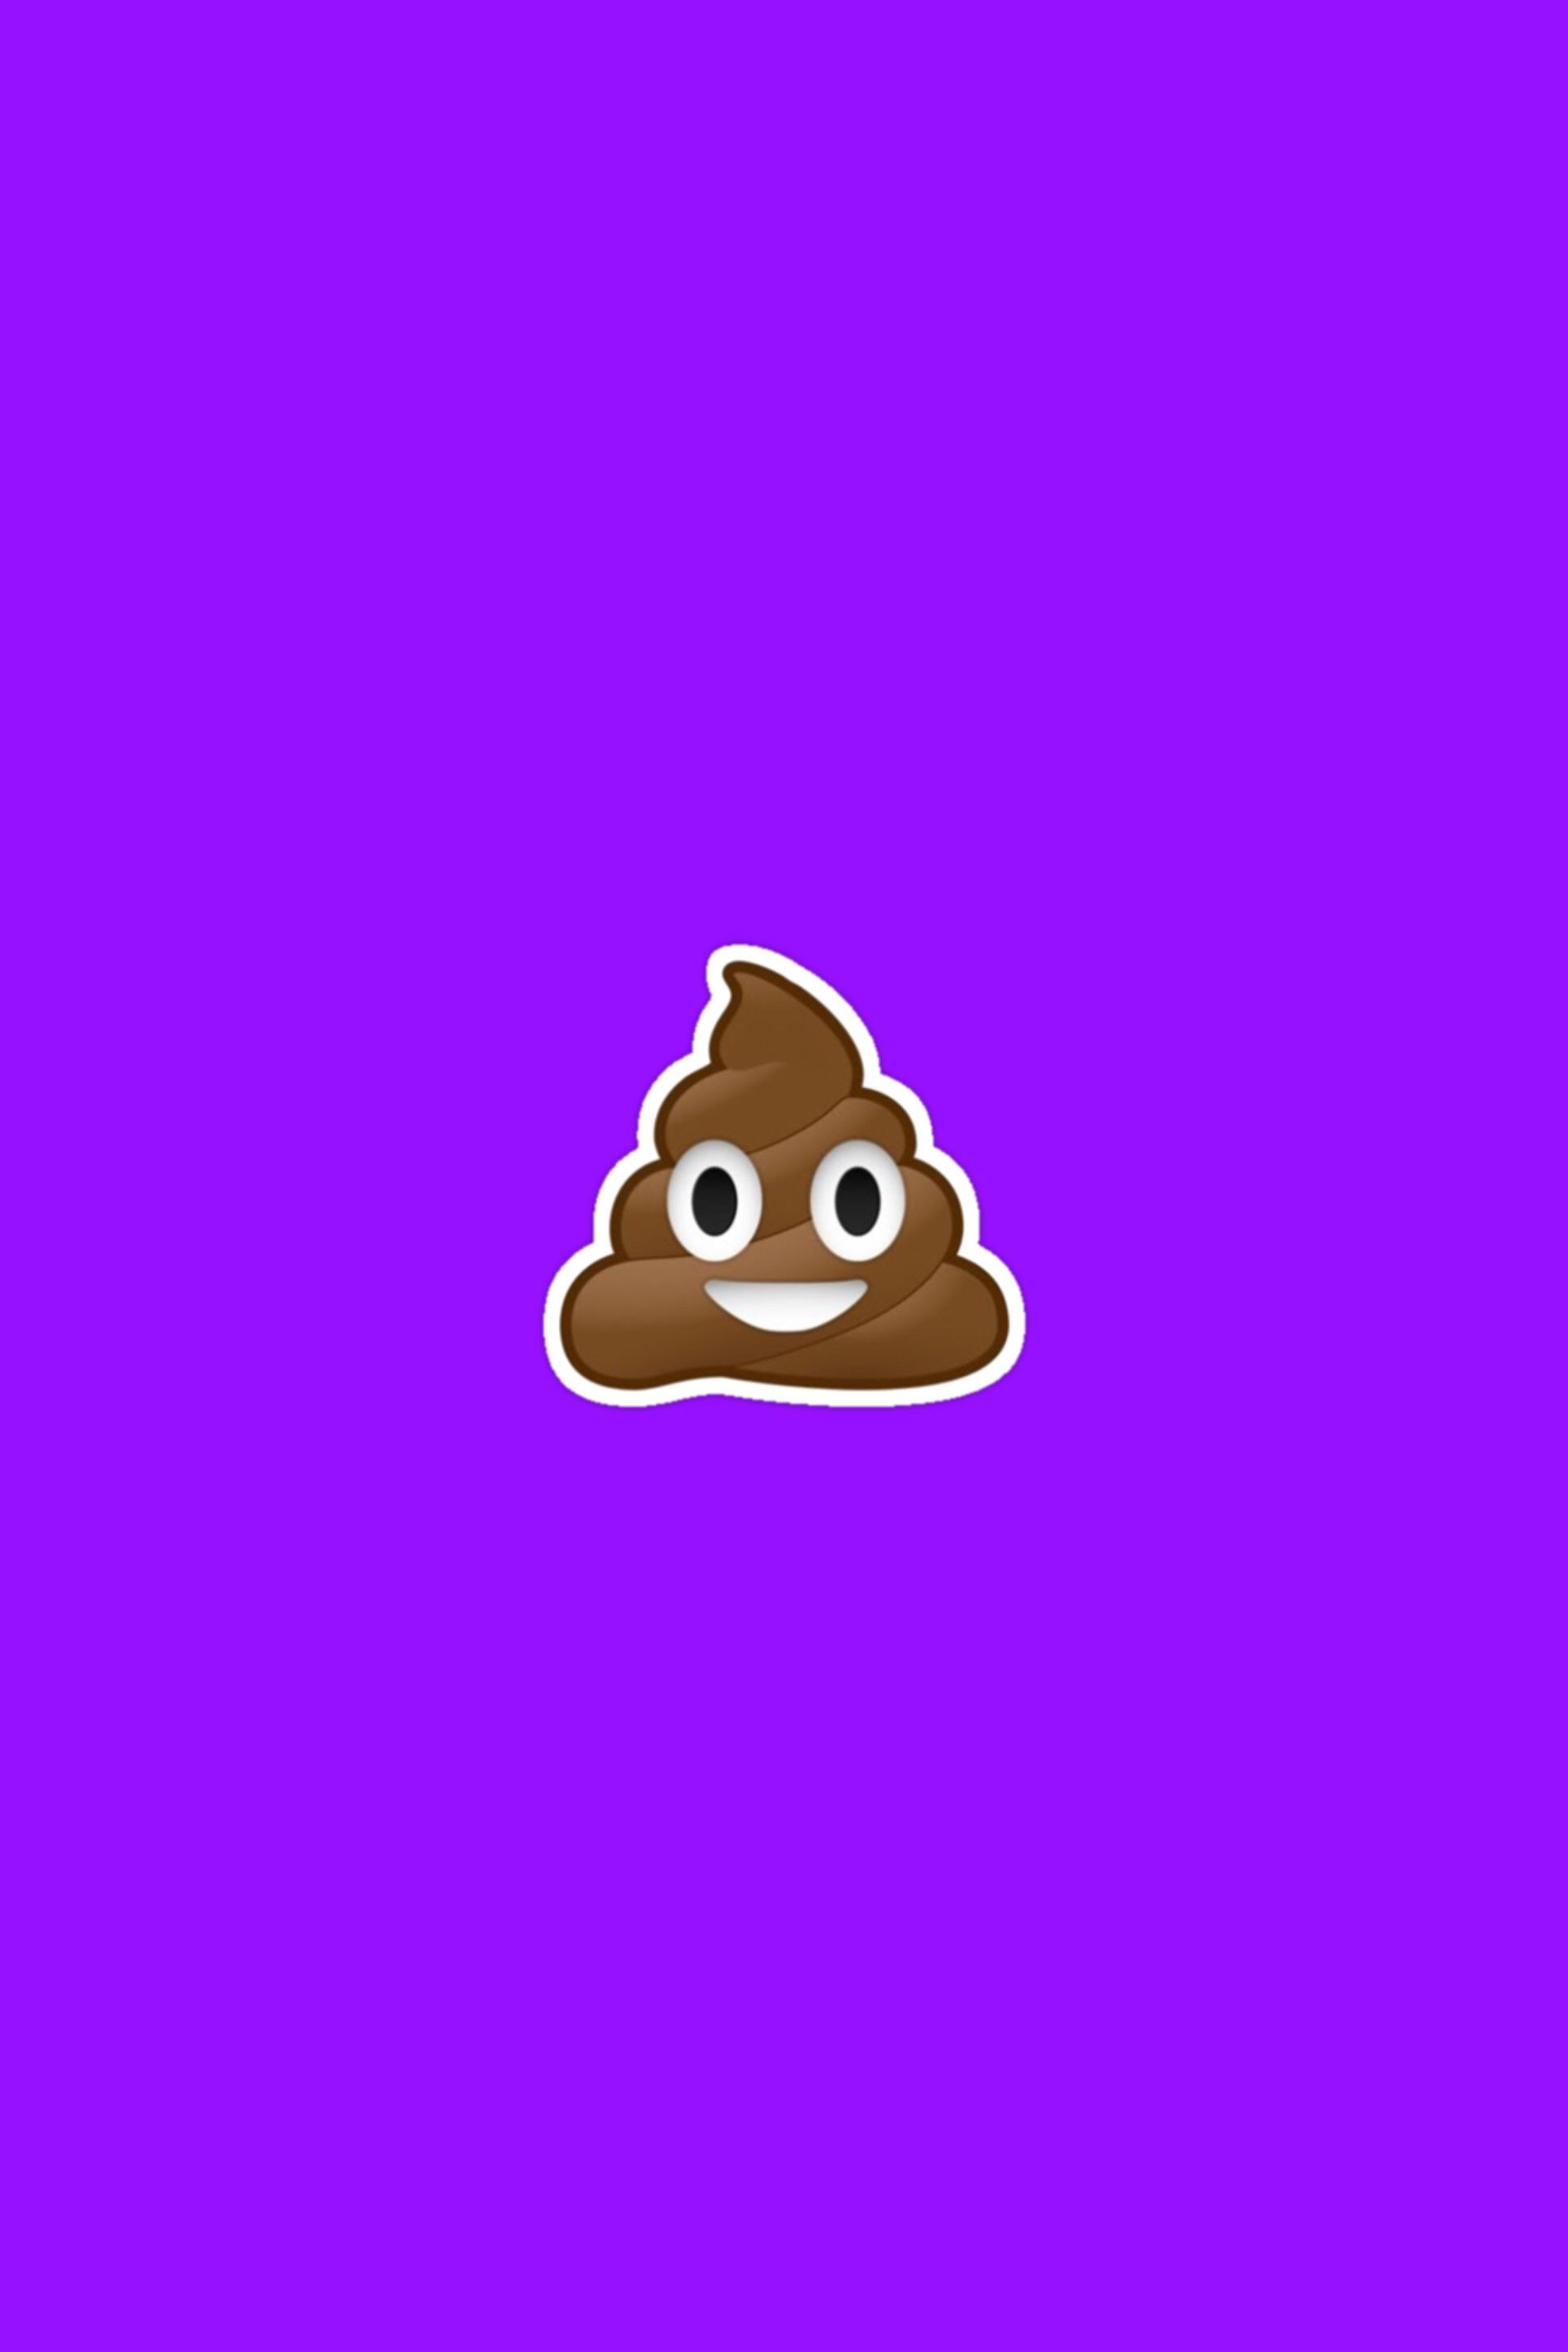 Poop Emoji Wallpapers posted by Sarah Mercado